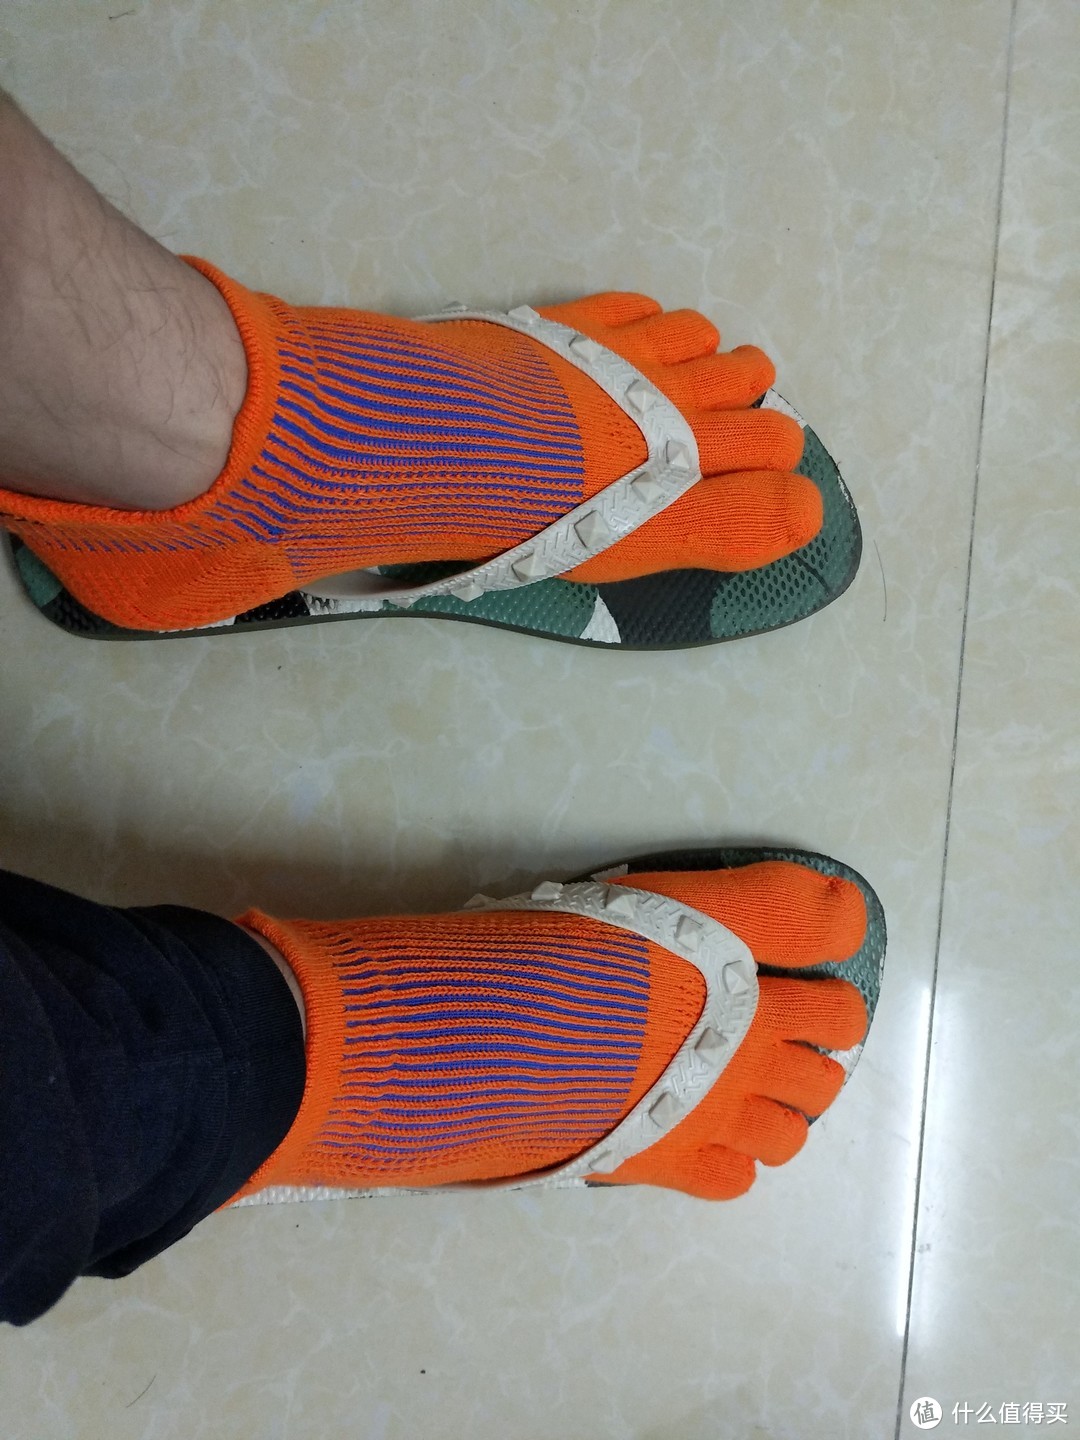 普通鞋子也能穿出跑鞋的感觉。GEARLAB燃烧装备实验室3D压力五指袜2.0评测